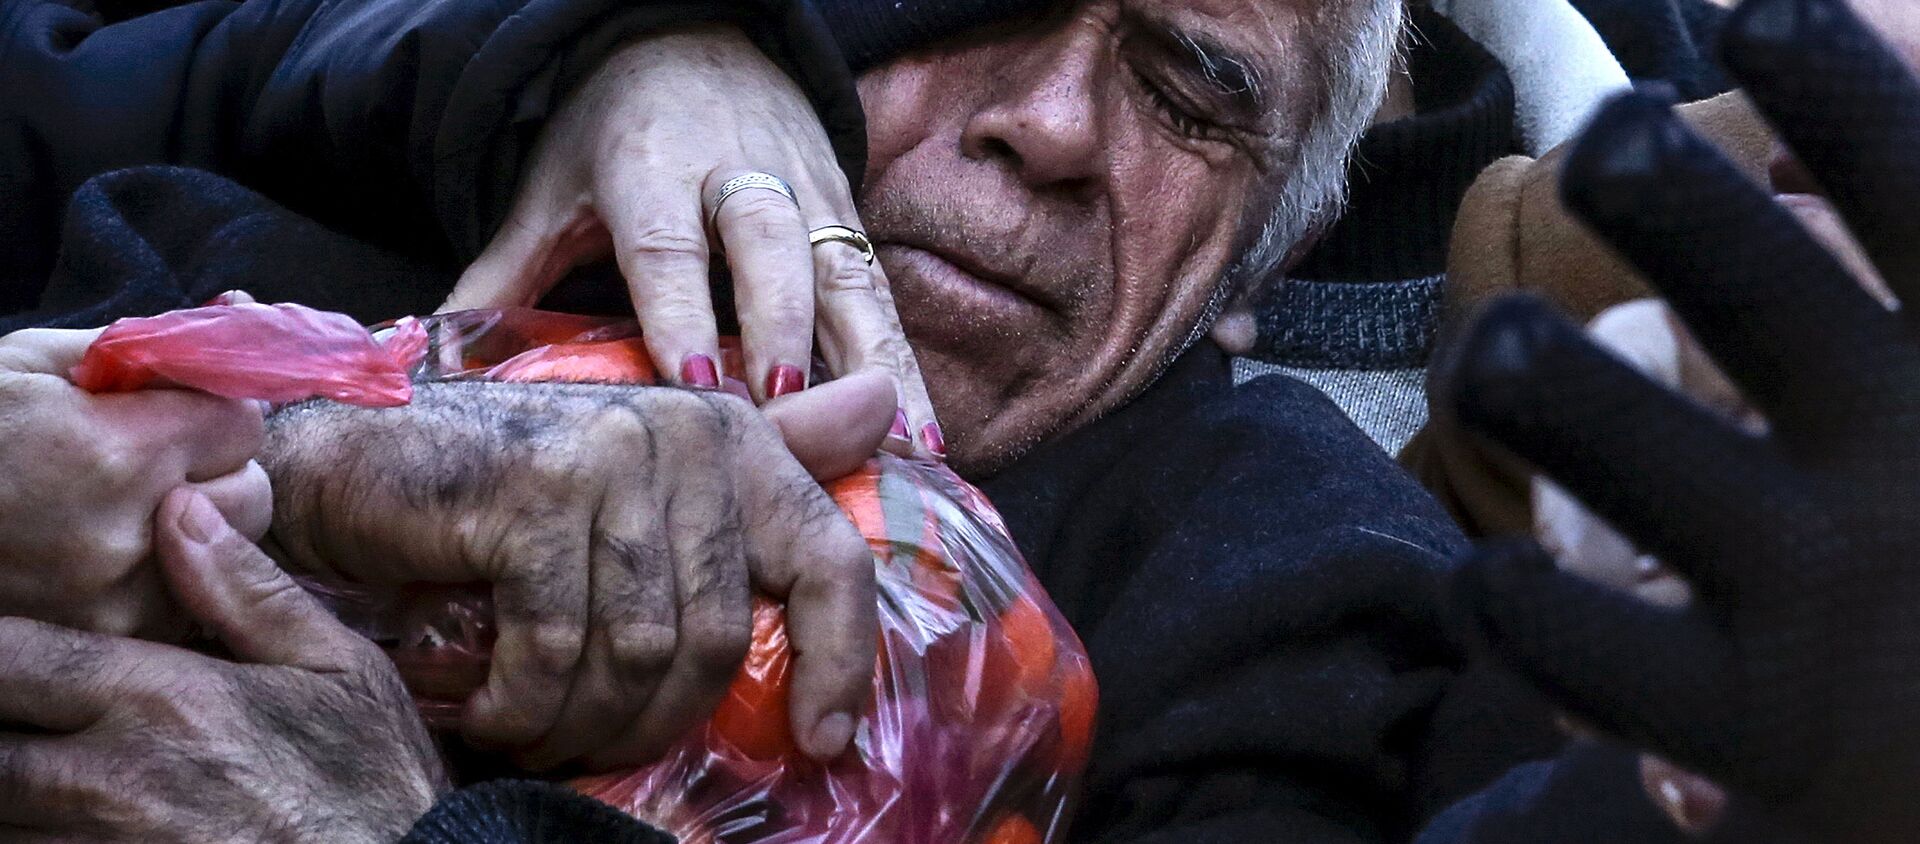 Ocak 2016'da Atina'da çiftçilerin Yunan hükümetinin emeklilik reformunu protesto için bedava dağıttığı mandalinalar kapışılırken izdiham yaşanmıştı. - Sputnik Türkiye, 1920, 20.08.2018